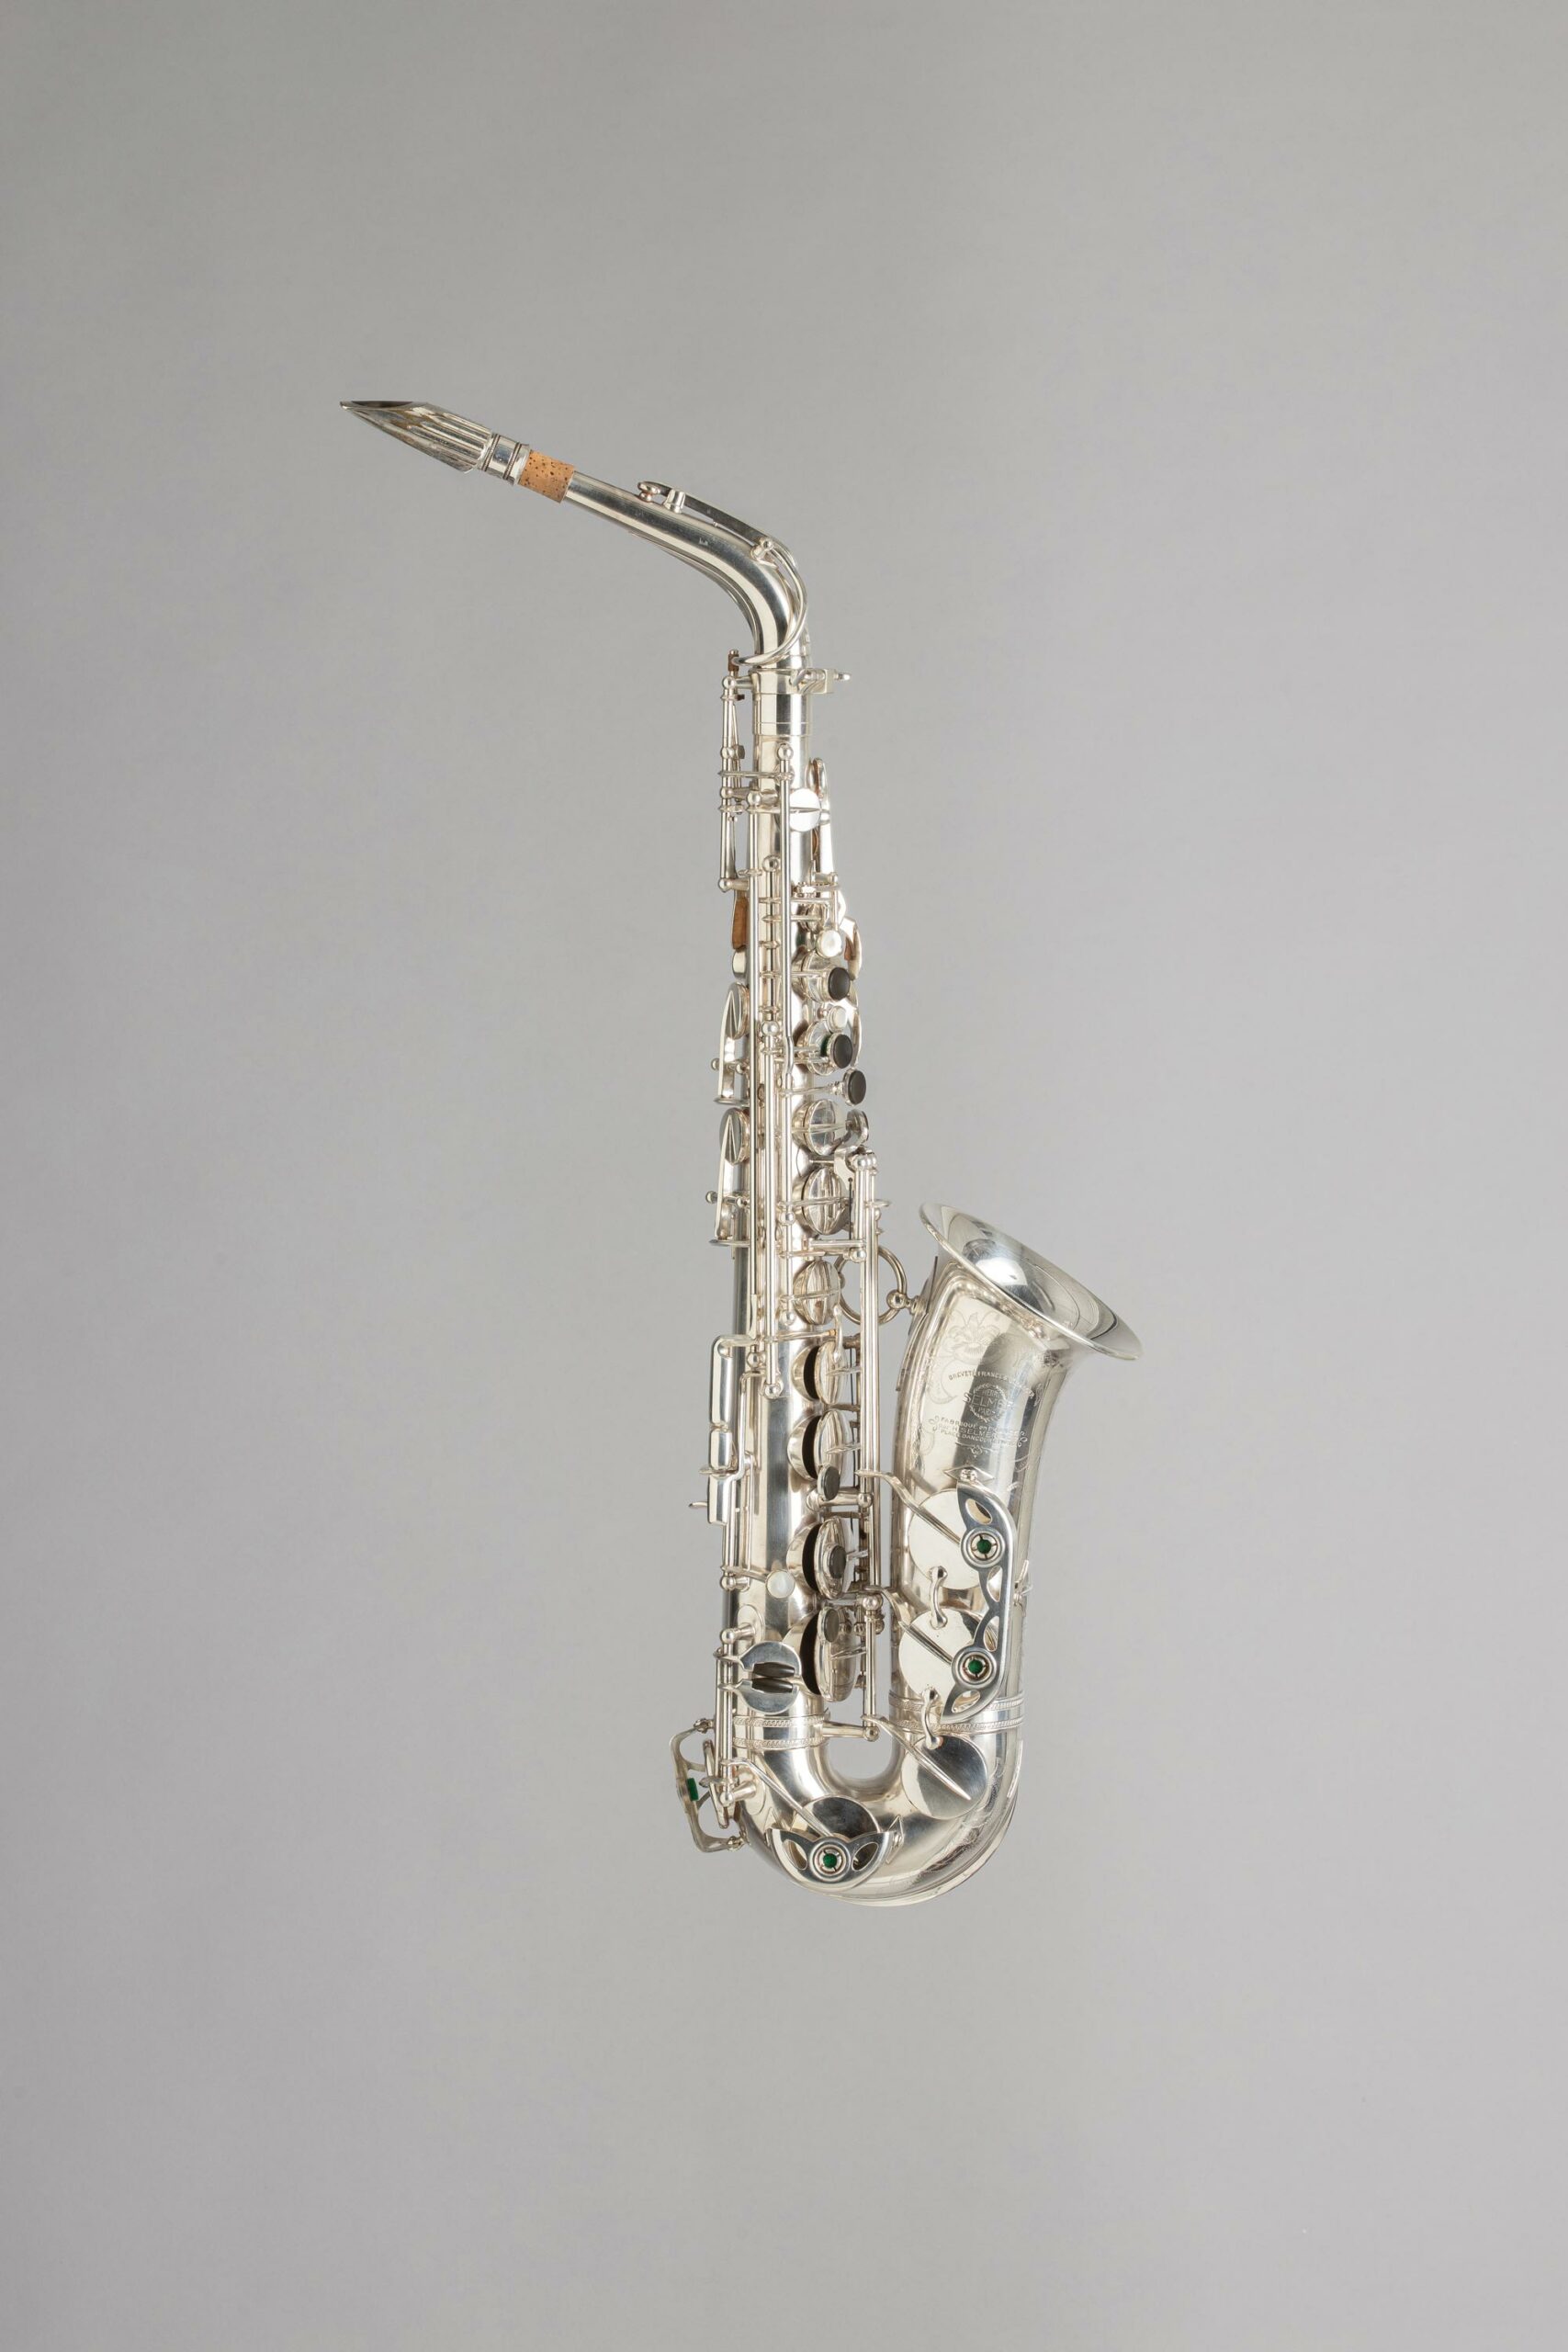 Saxophone alto SELMER Instrument mis en vente par Vichy Enchères le 5 novembre 2022 © C. Darbelet